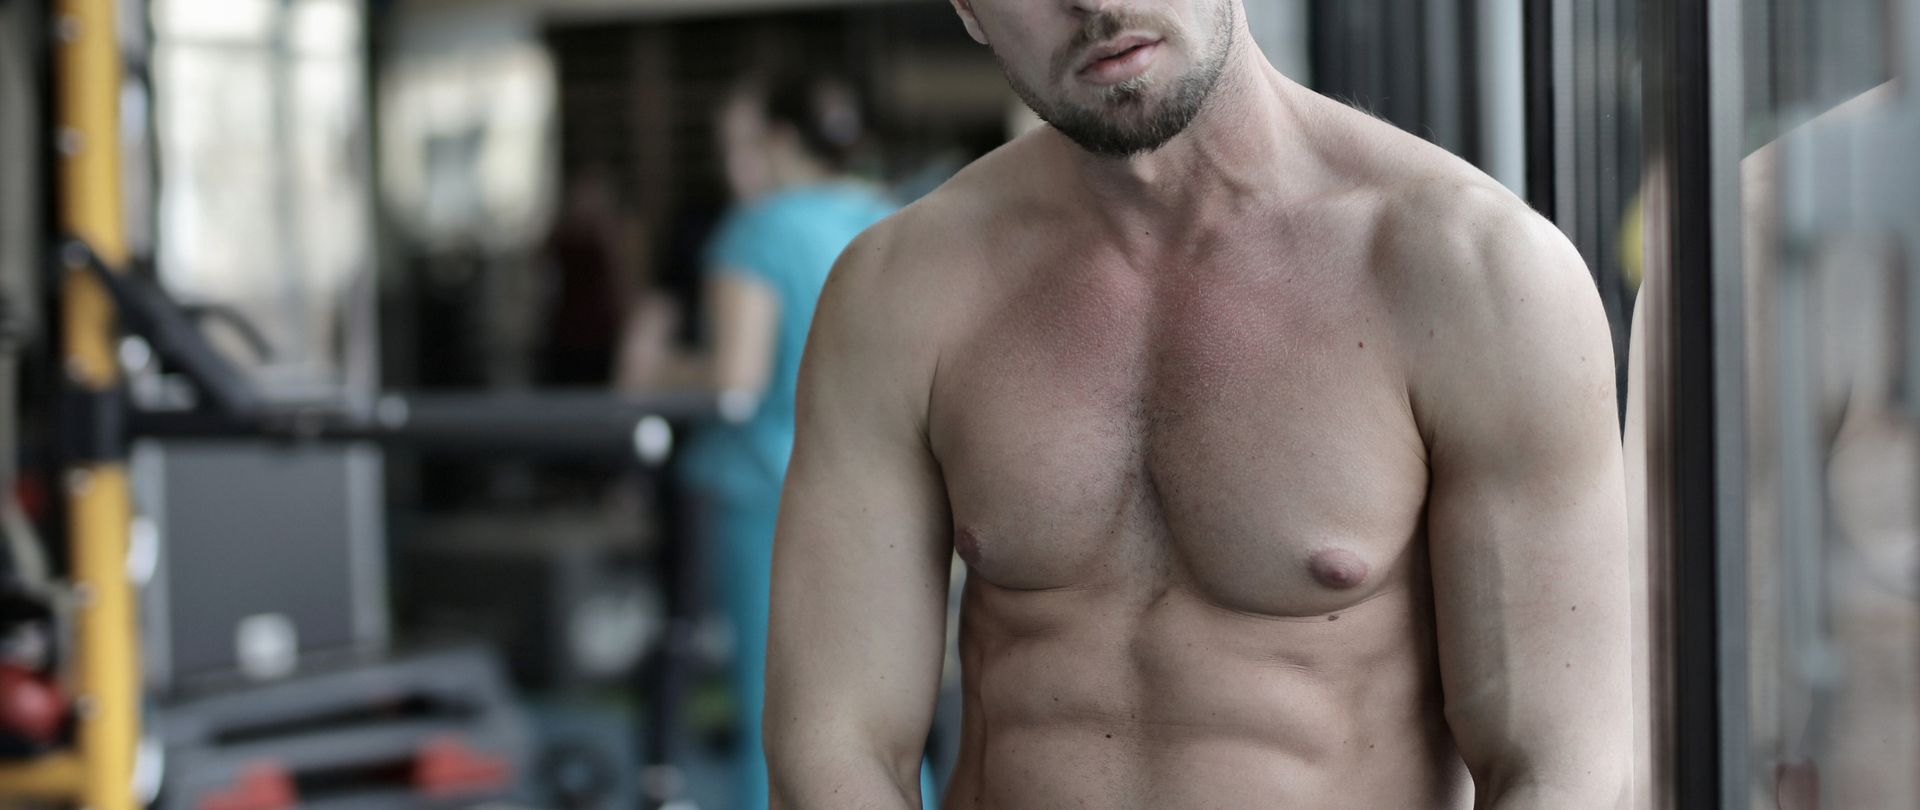 shirtless man at gym